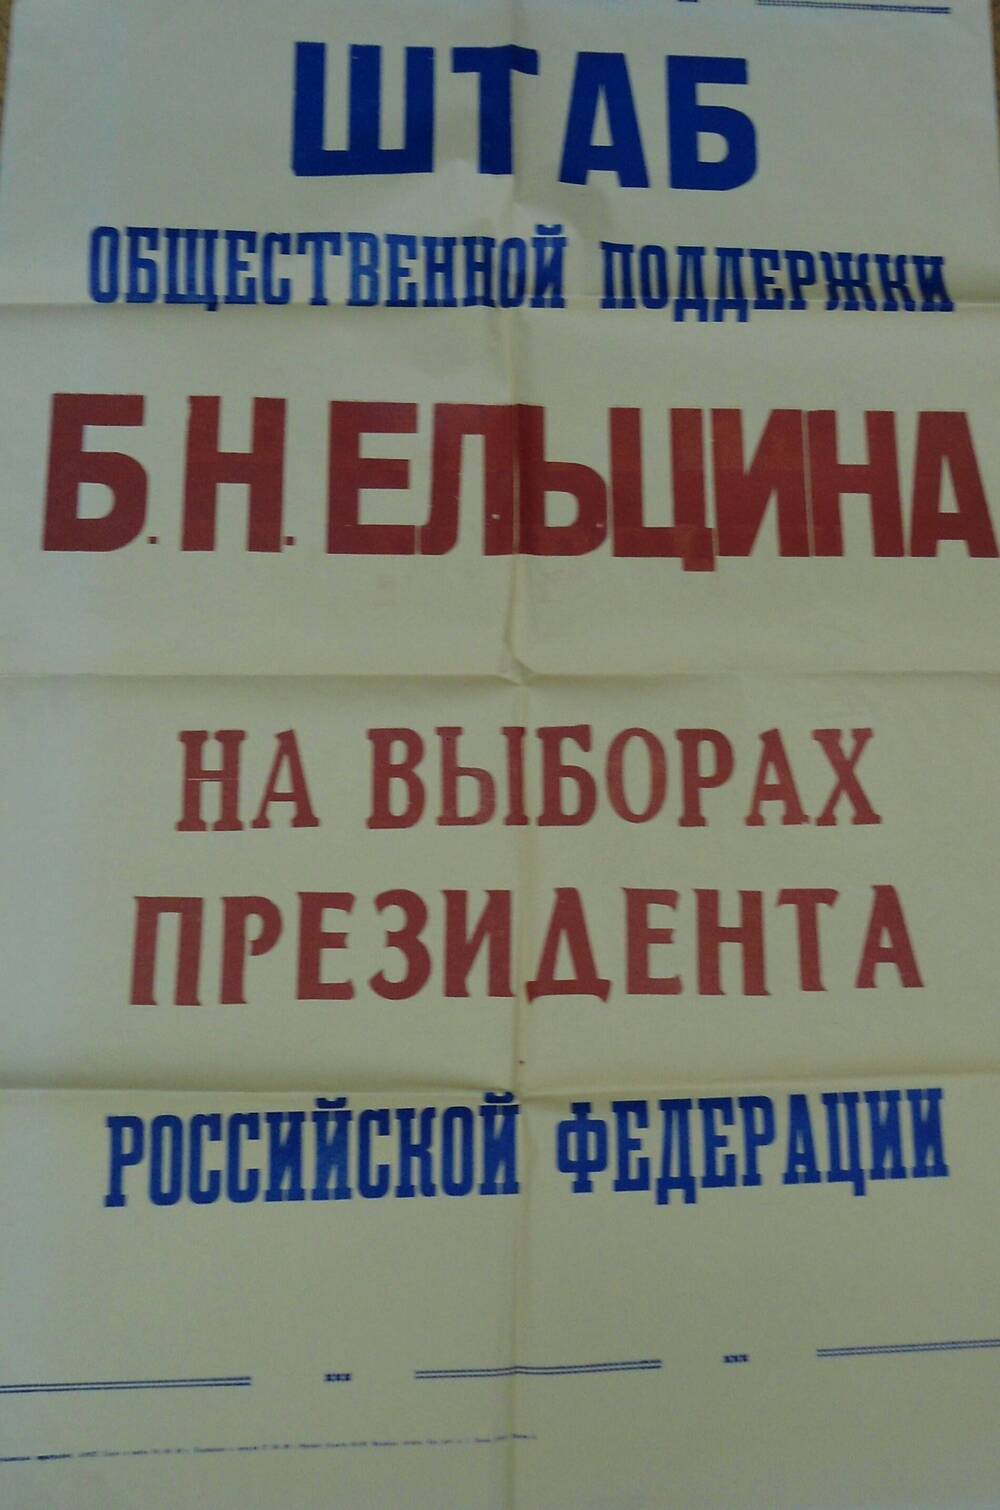 Афиша- объявление Штаб общественной поддержки Ельцина на выборах президента РФ